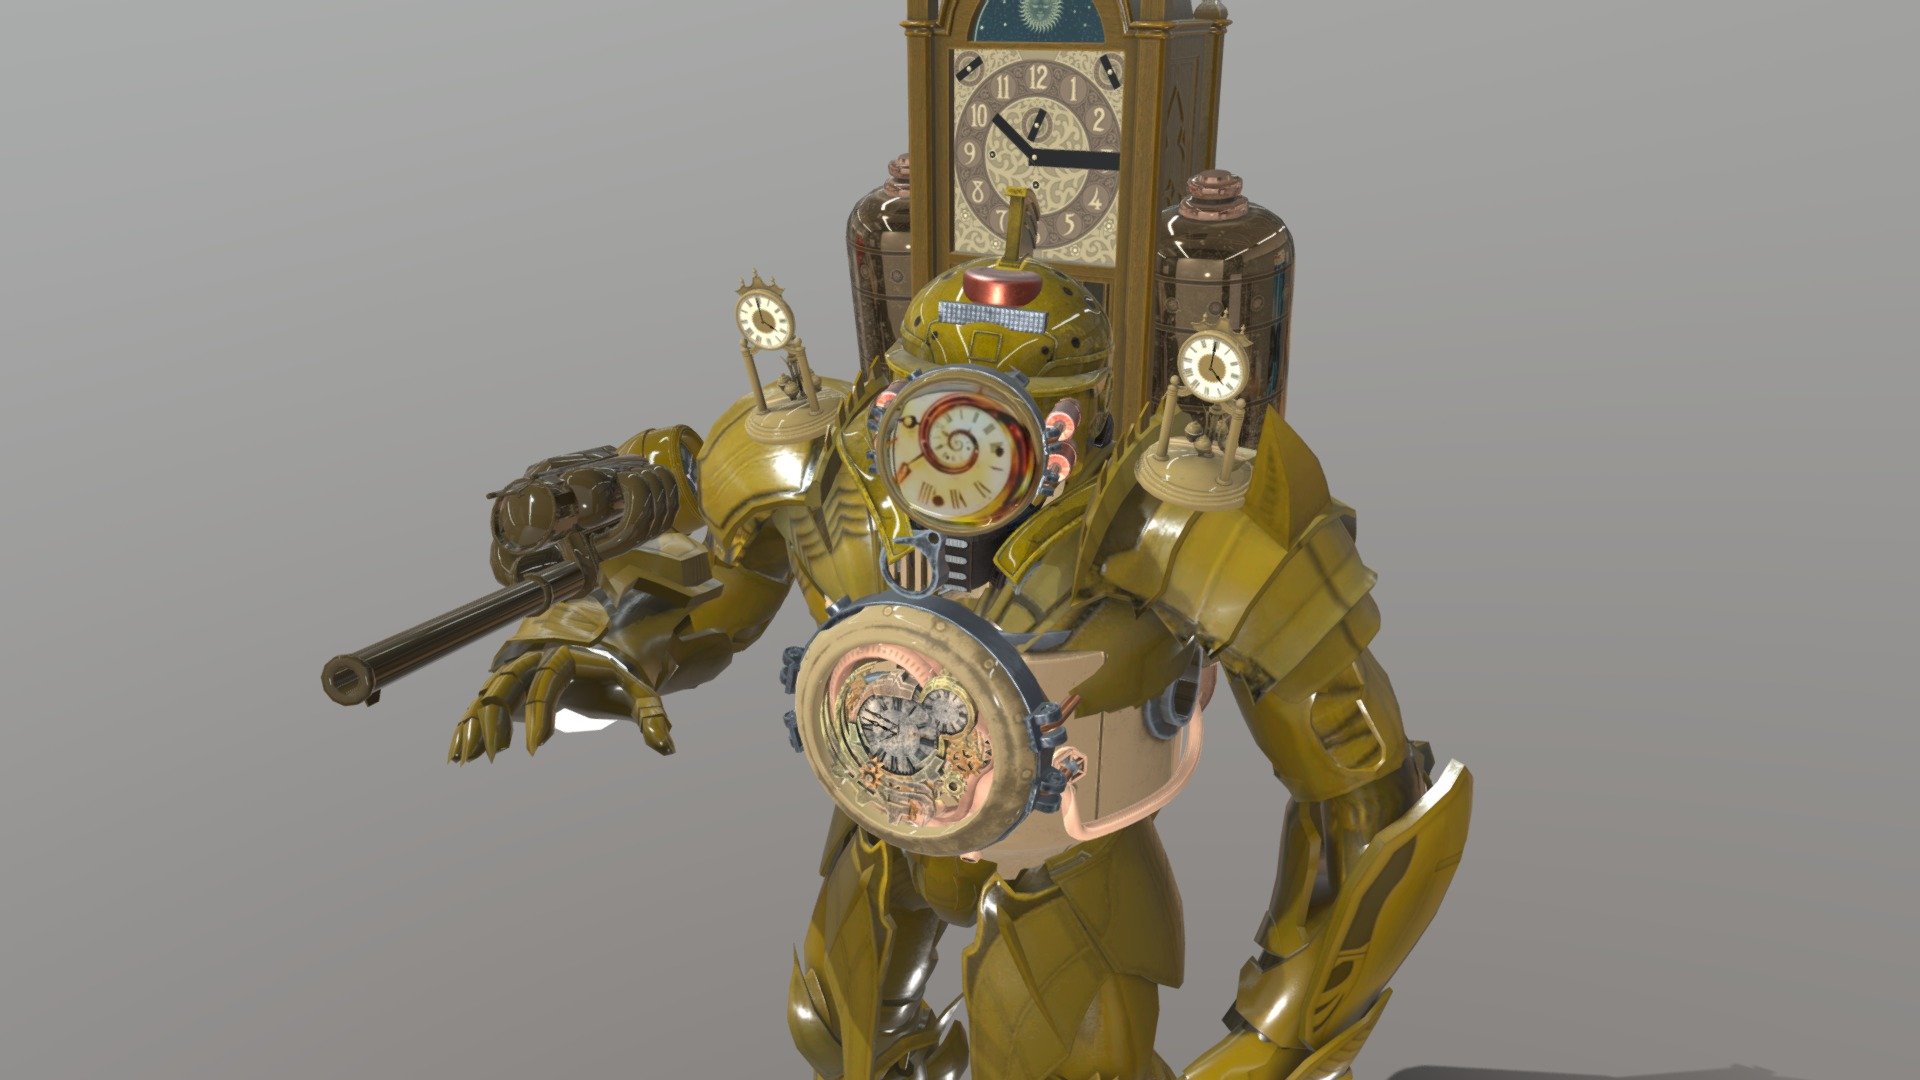 Titan Clockman - 3D model by j gmanfromhl2 cbadb22